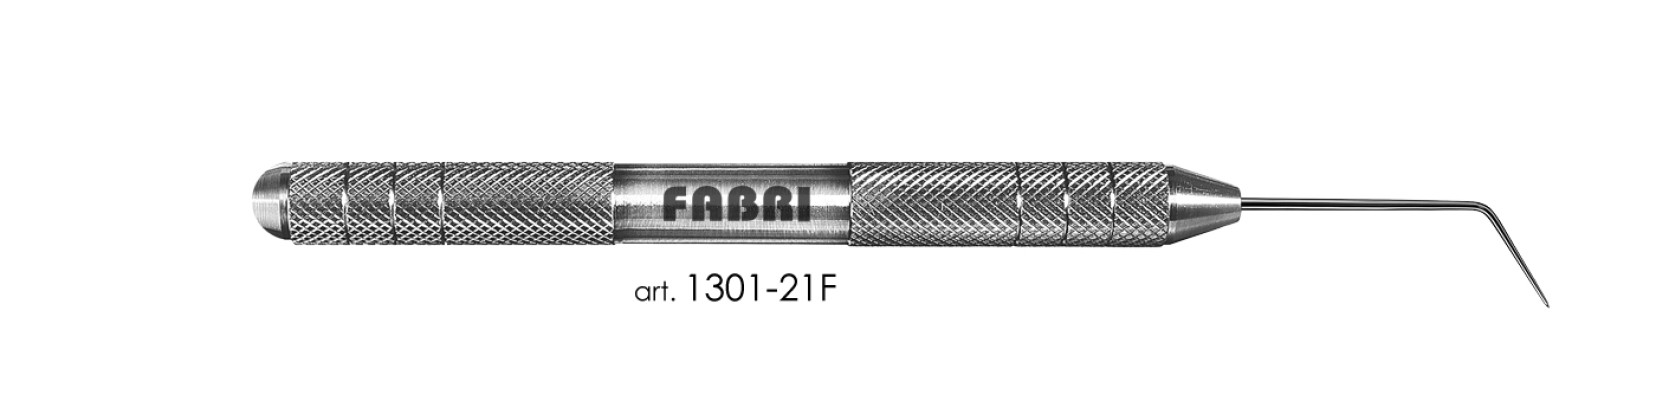 Зонд общего обследования 1301-21 F Fabri